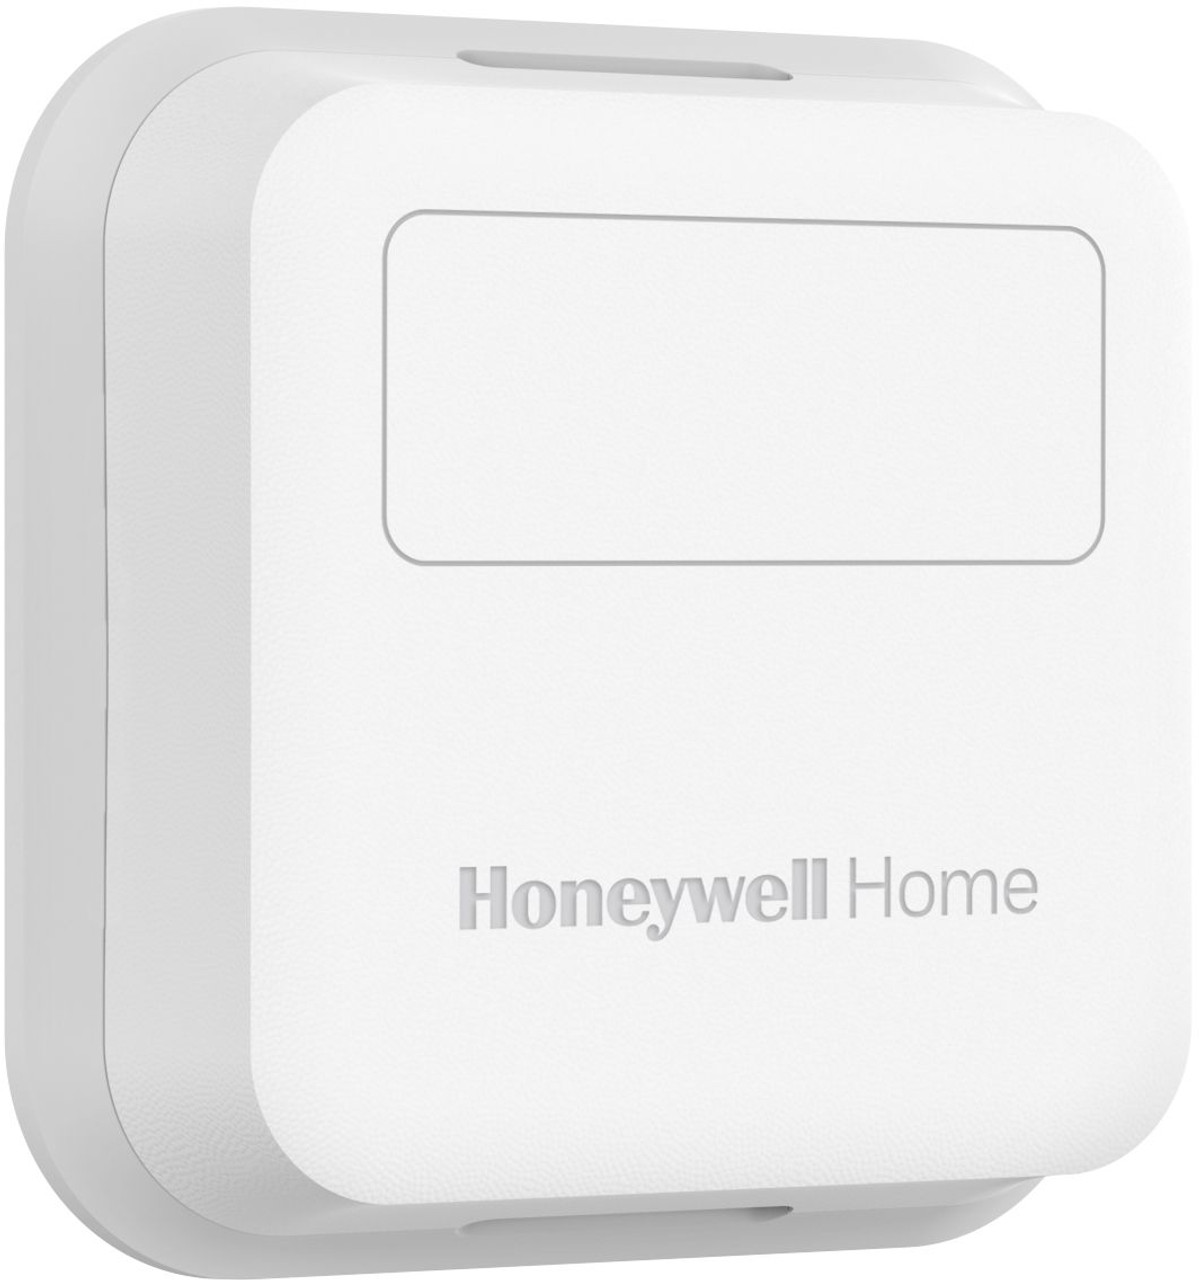 Honeywell - Smart Room Sensor - White